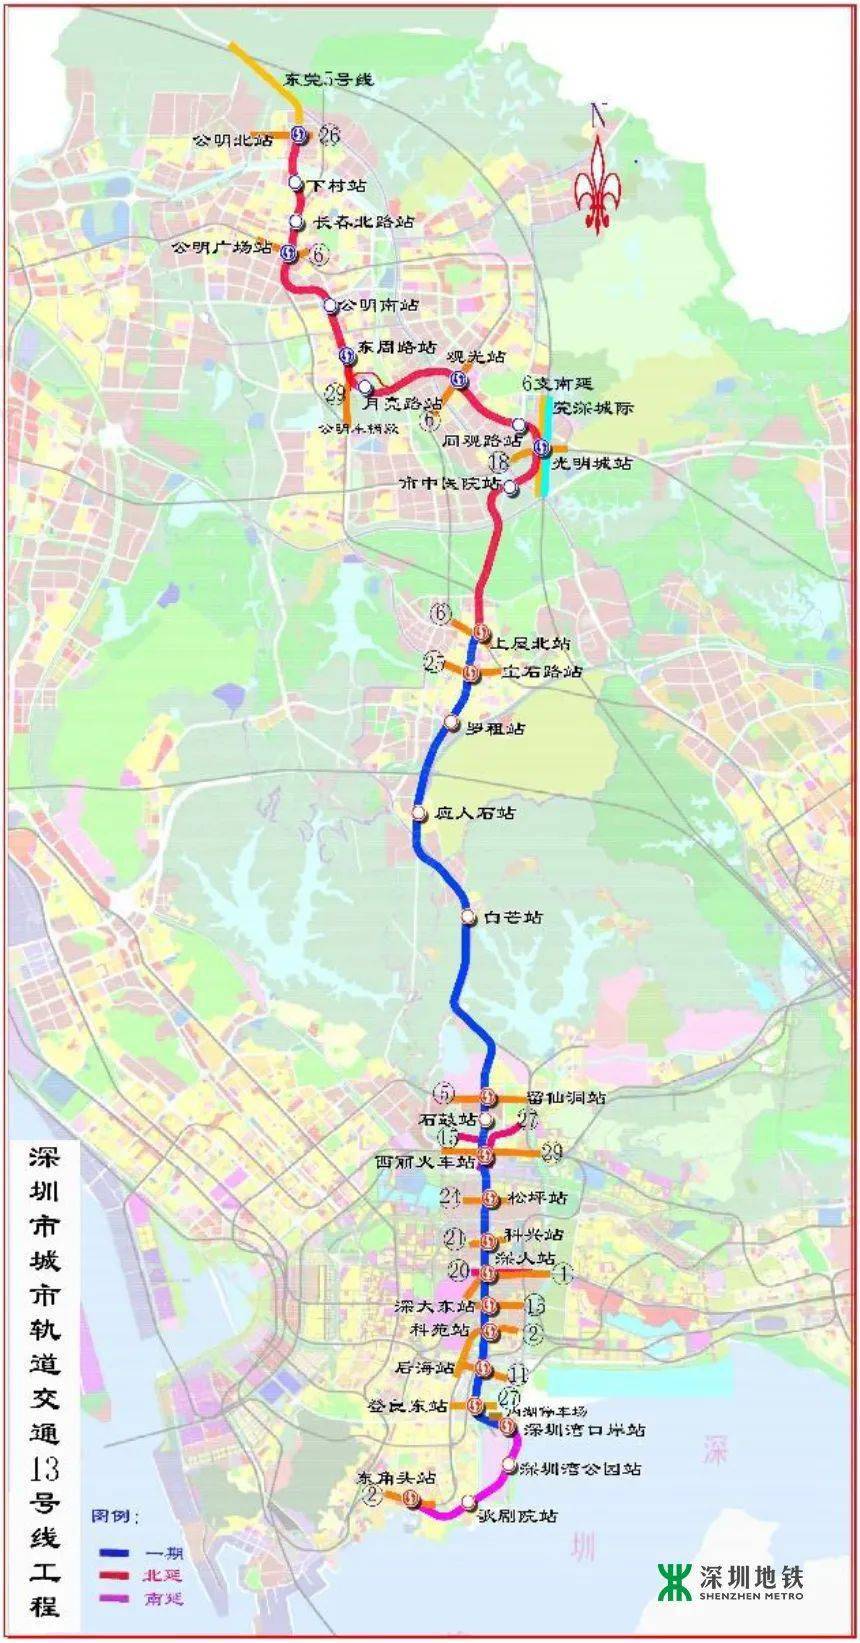 连接起 福田区,罗湖区 龙岗区,坪山区 并预留延伸至惠州的条件 地铁14